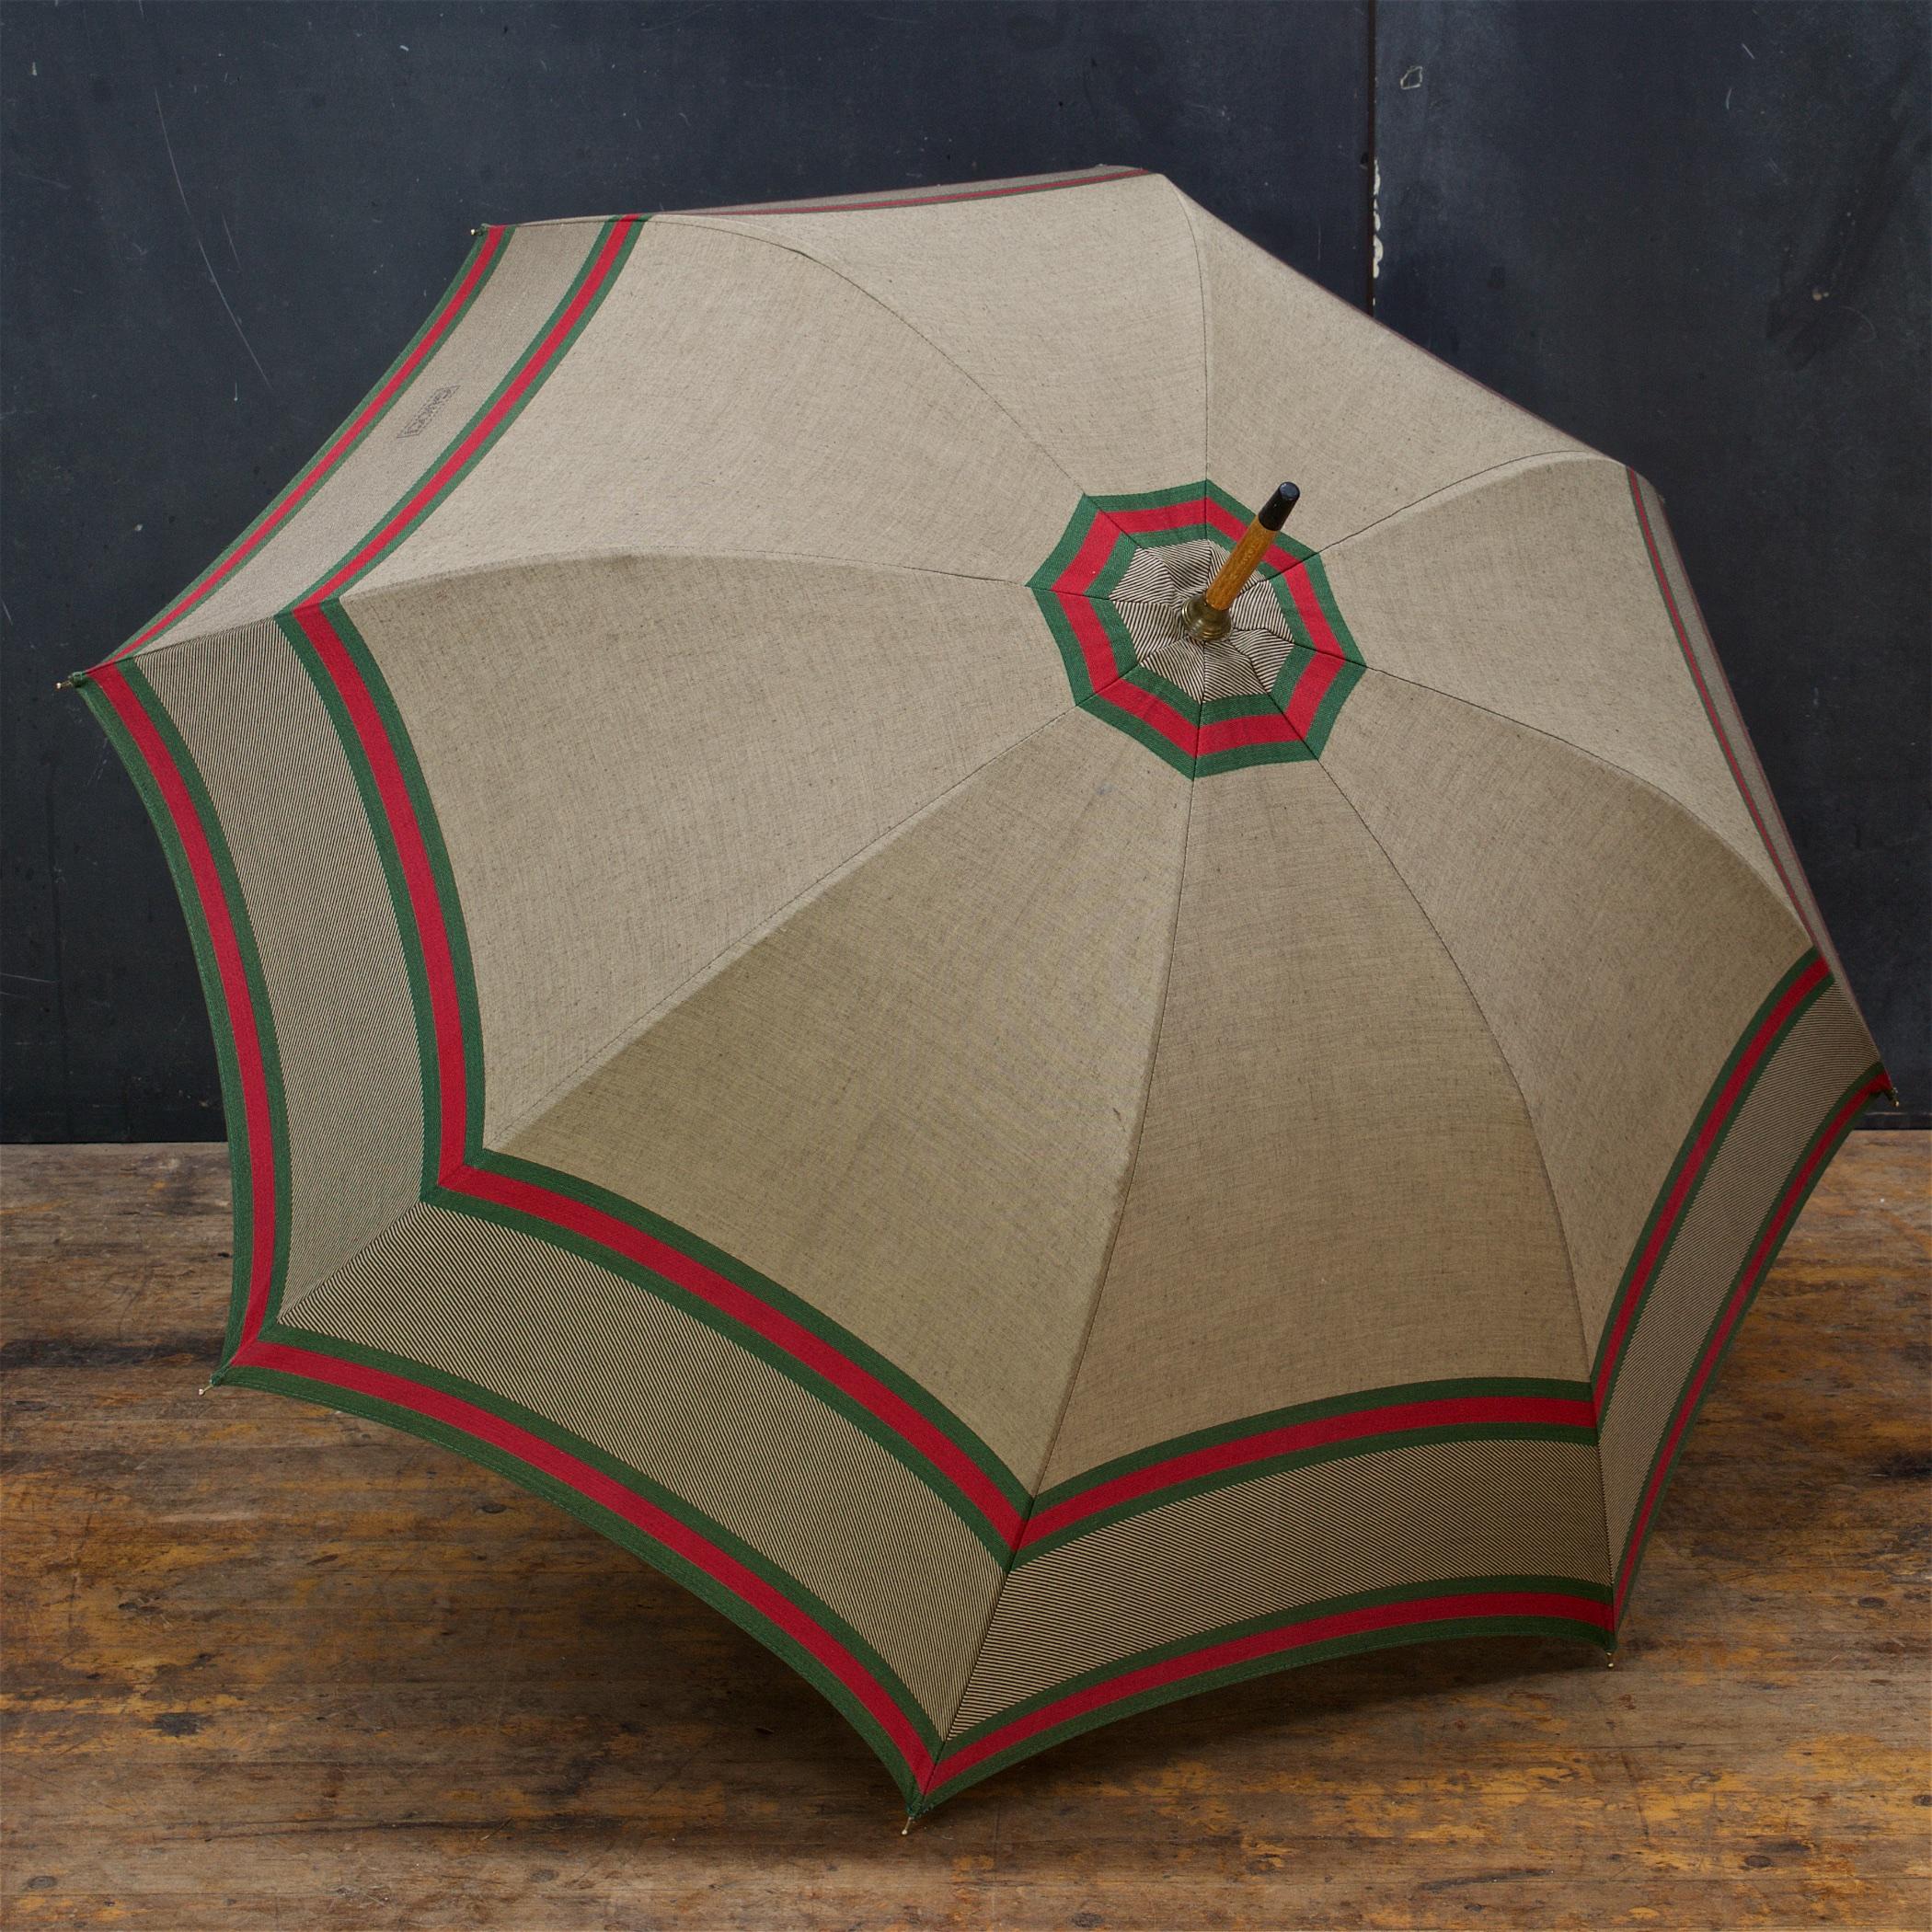 1960s umbrella